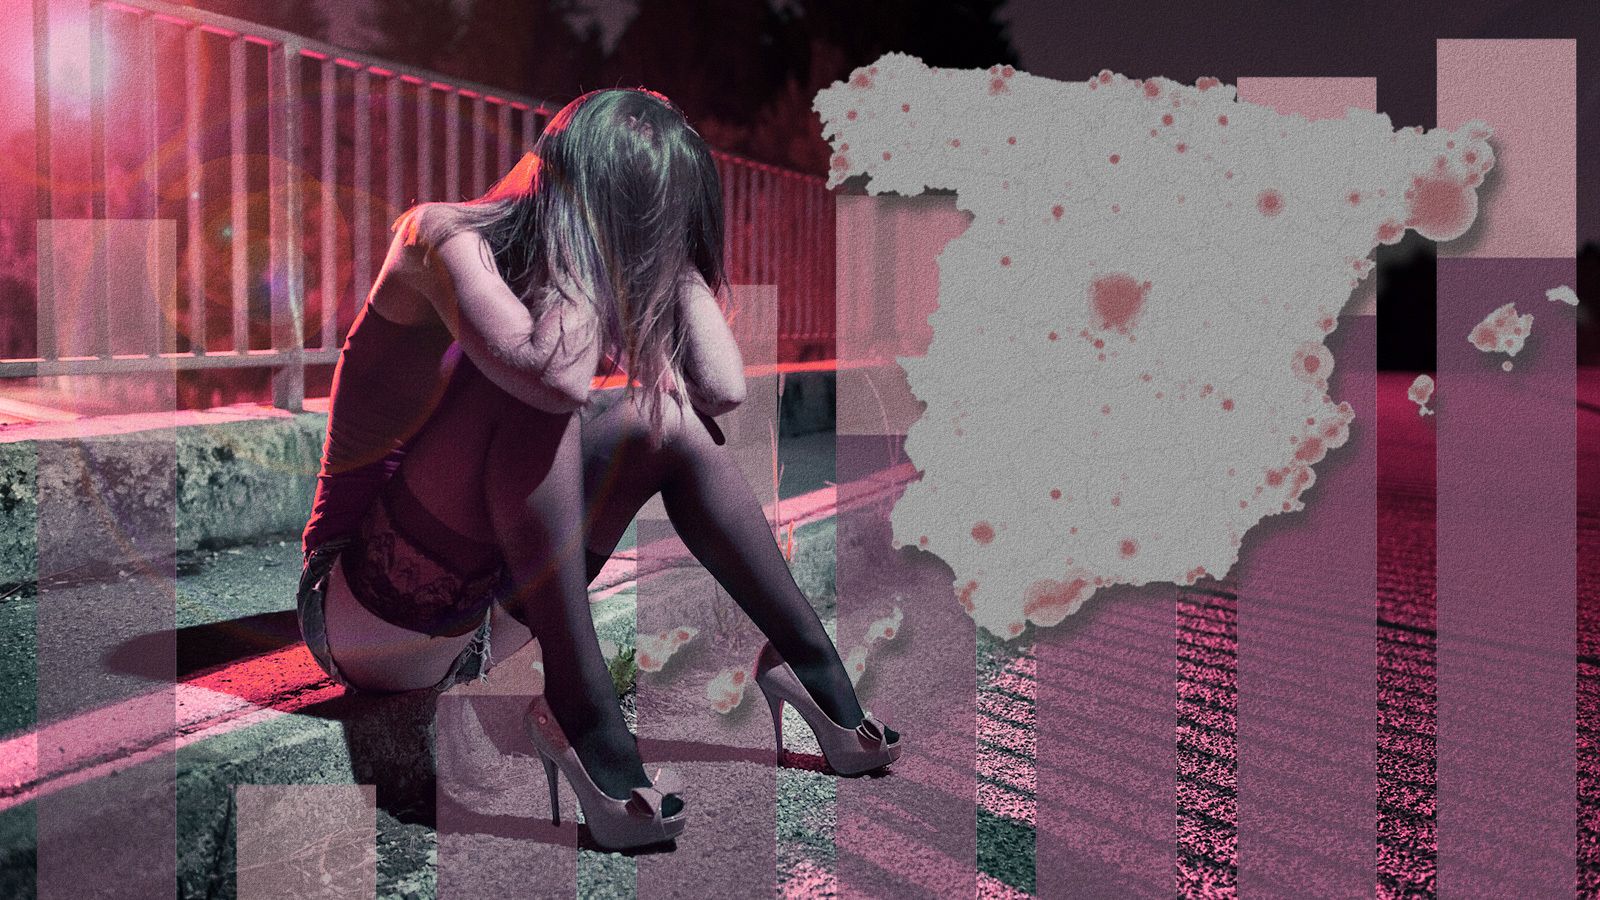 En España la prostitución no es legal ni ilegal